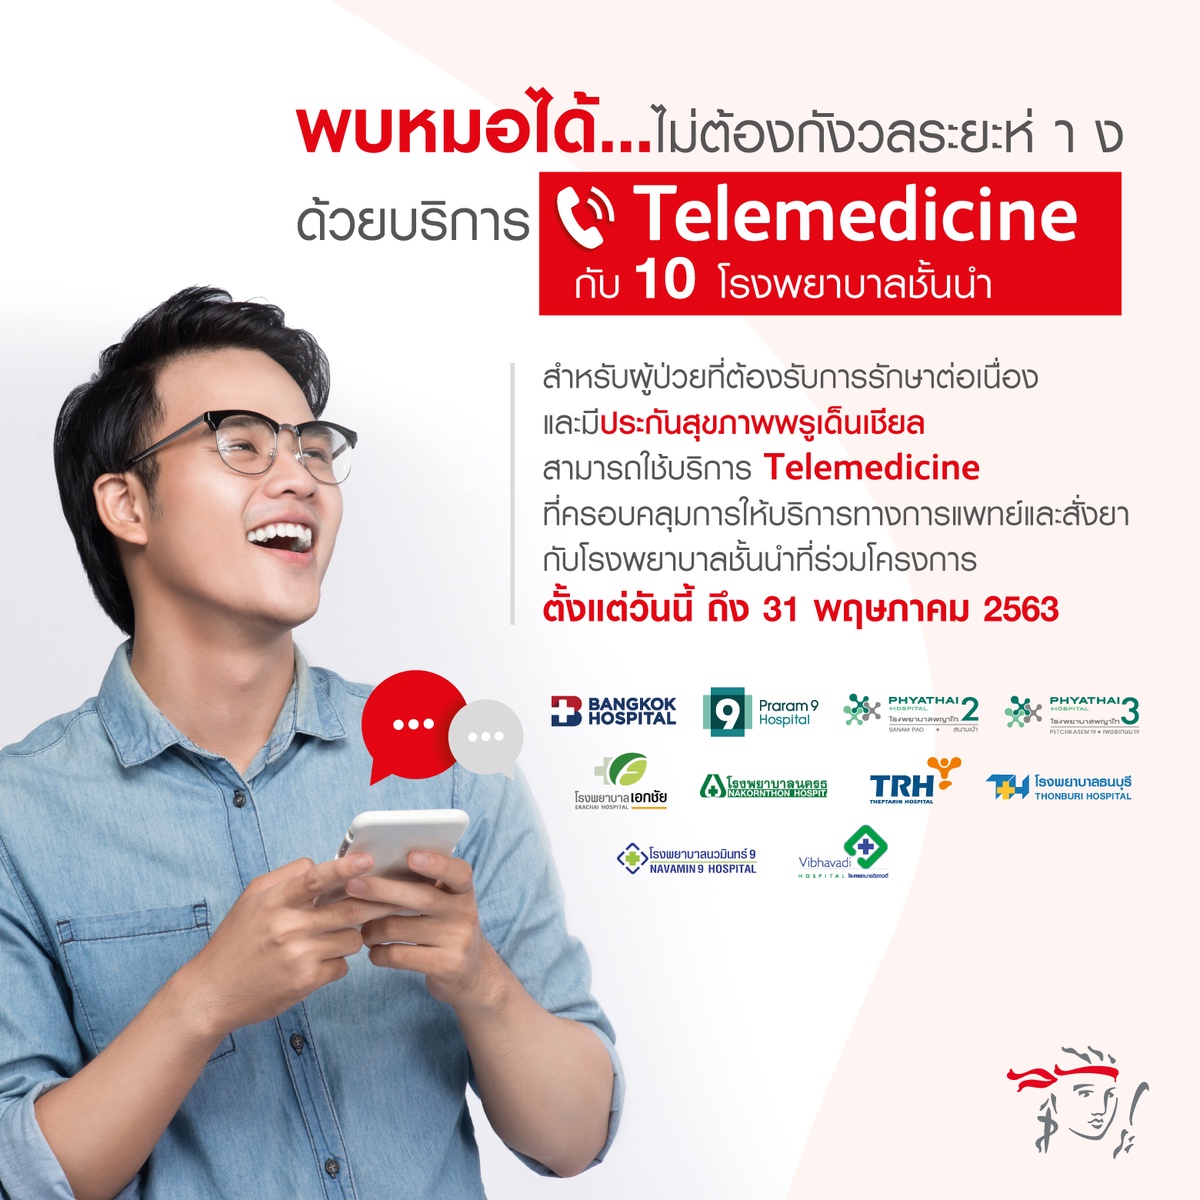 พรูเด็นเชียล ประเทศไทย ผนึกกำลัง 10 โรงพยาบาลคู่สัญญาชูบริการ Telemedicine รับมาตรการเว้นระยะห่างทางสังคมช่วงวิกฤตโควิด-19